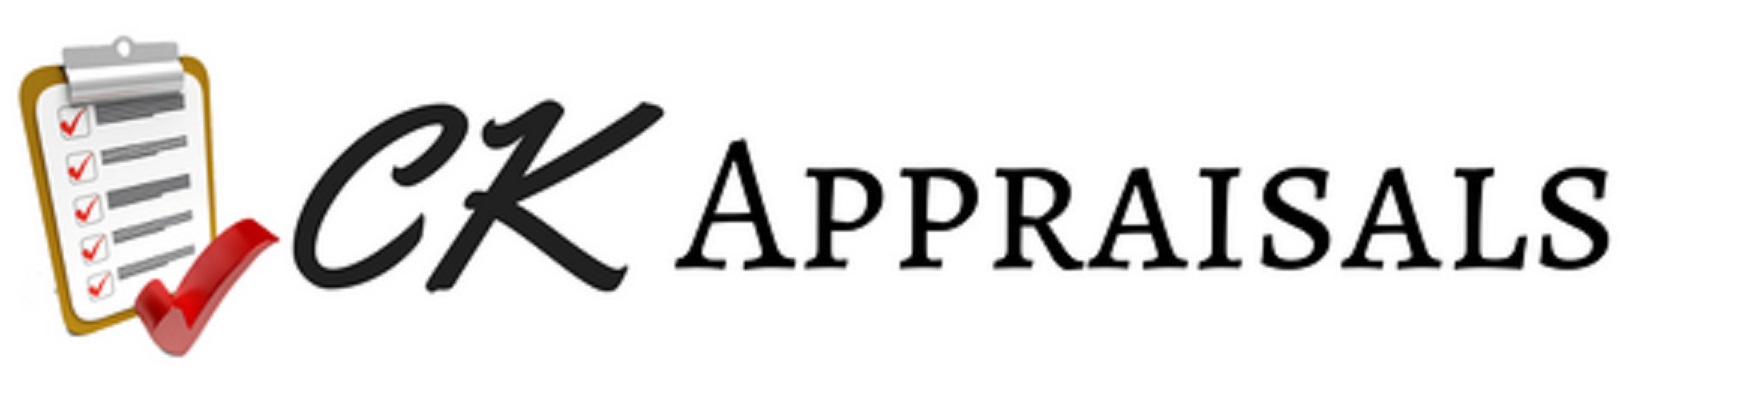 CK Appraisals's Logo